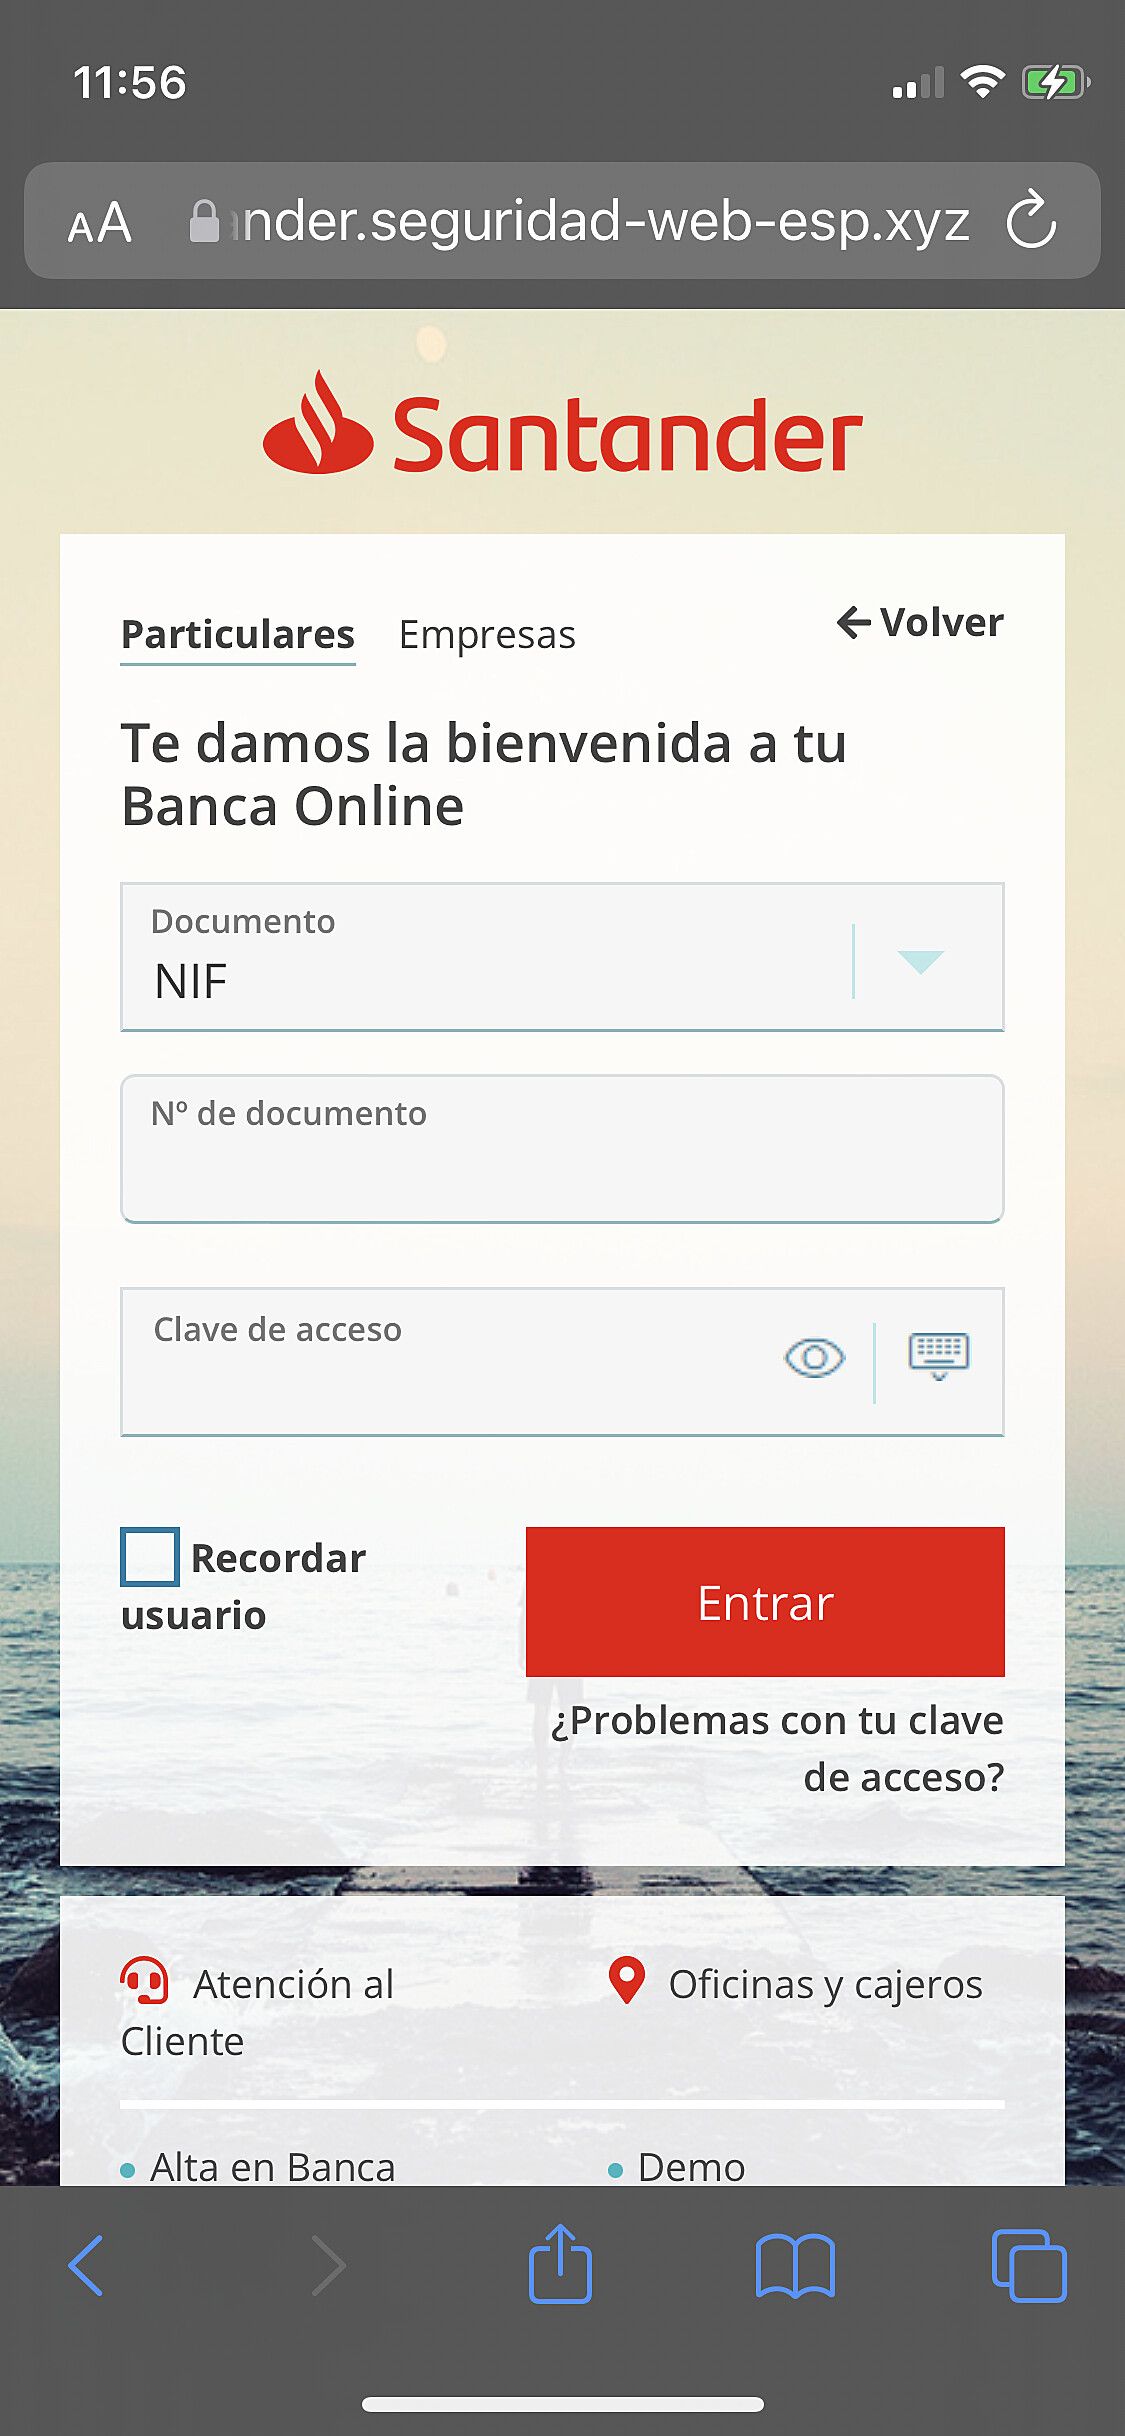 Web maliciosa que suplanta al Banco Santander (Fuente: Genbeta)